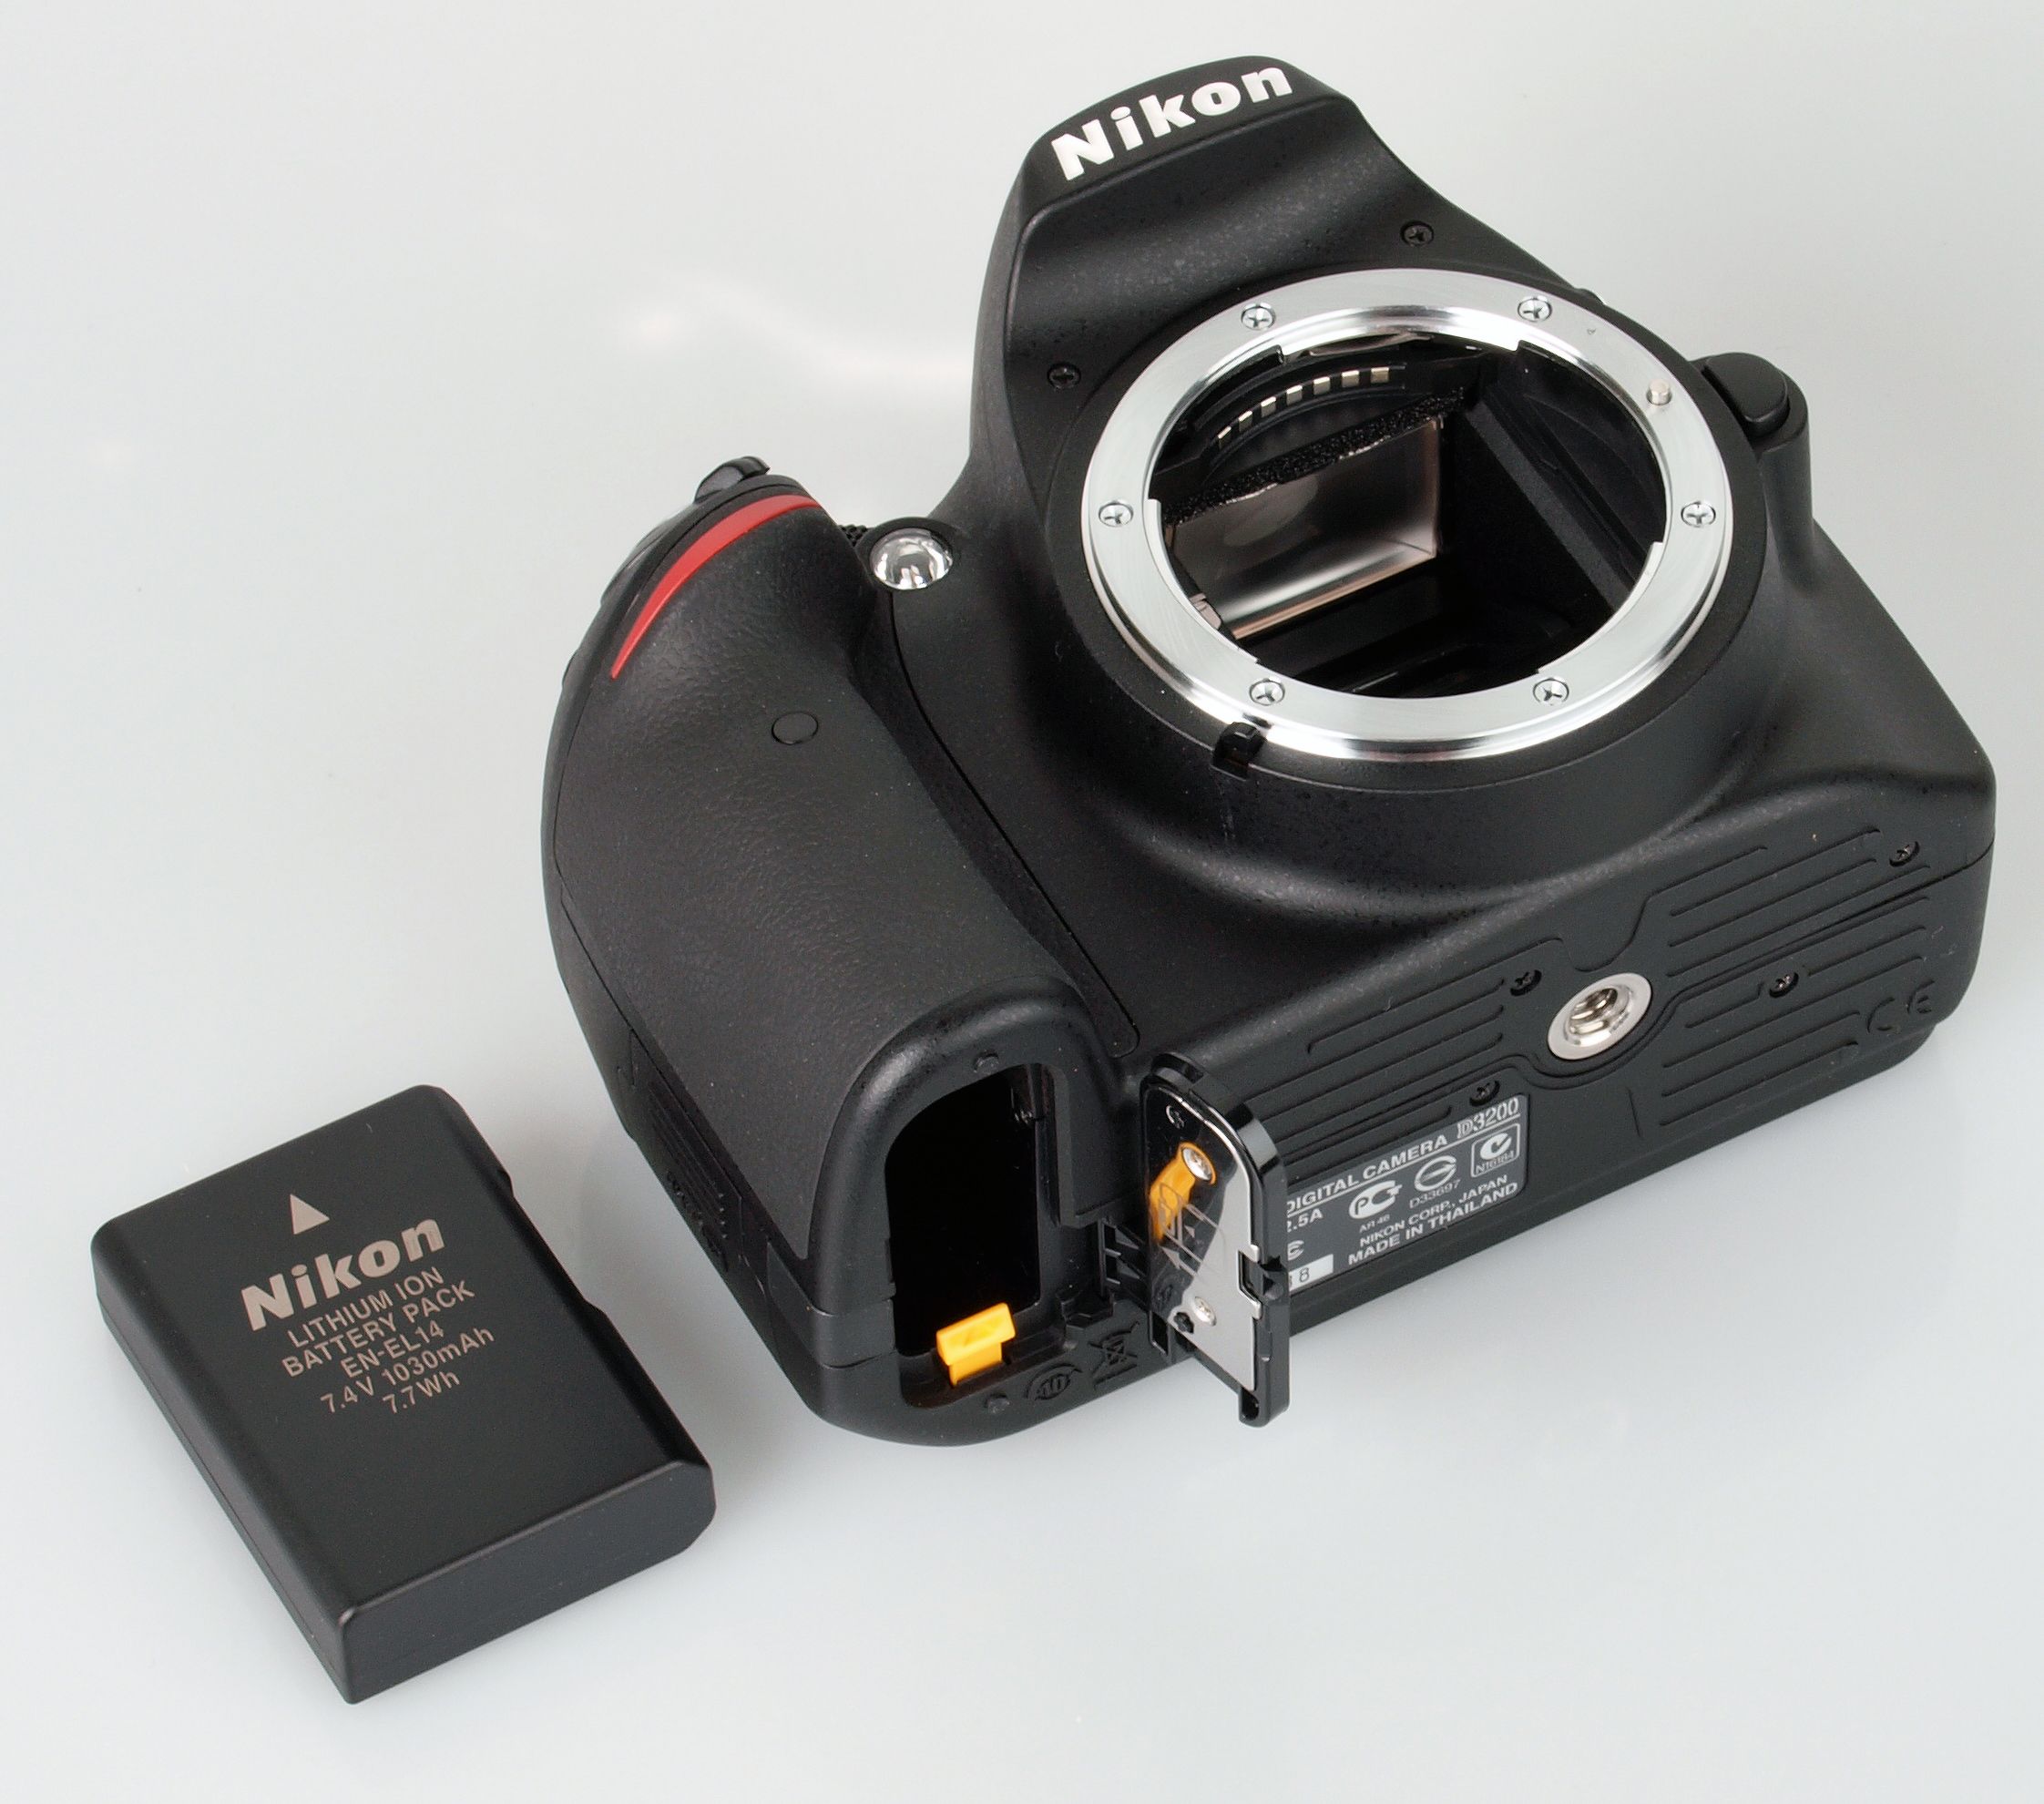  Nikon D3200 24.2 Megapixel HD Video,Wi-Fi